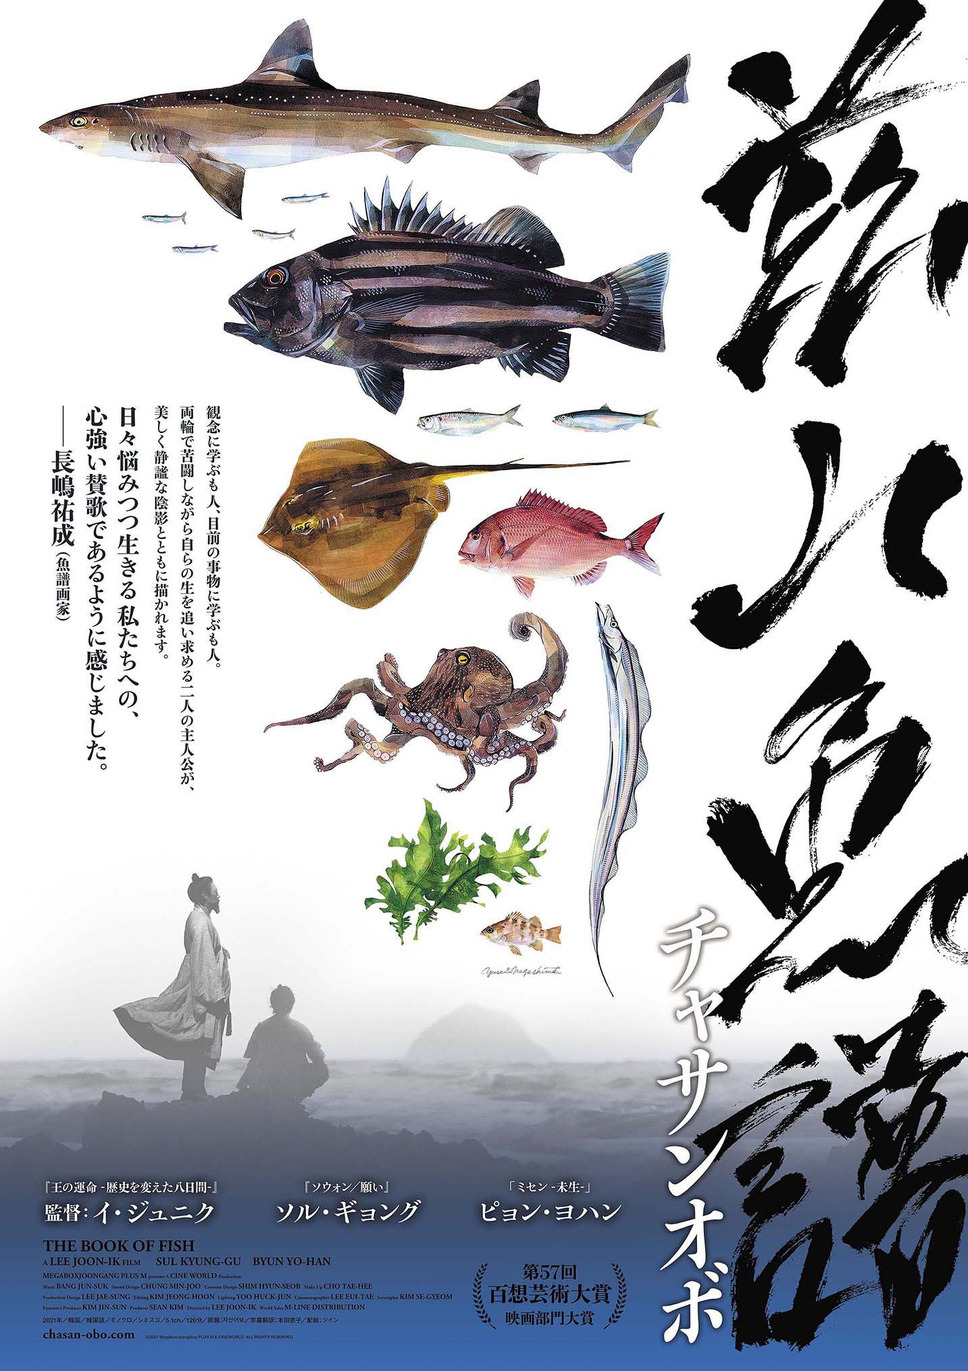 茲山魚譜-チャサンオボ- 5枚目の写真・画像